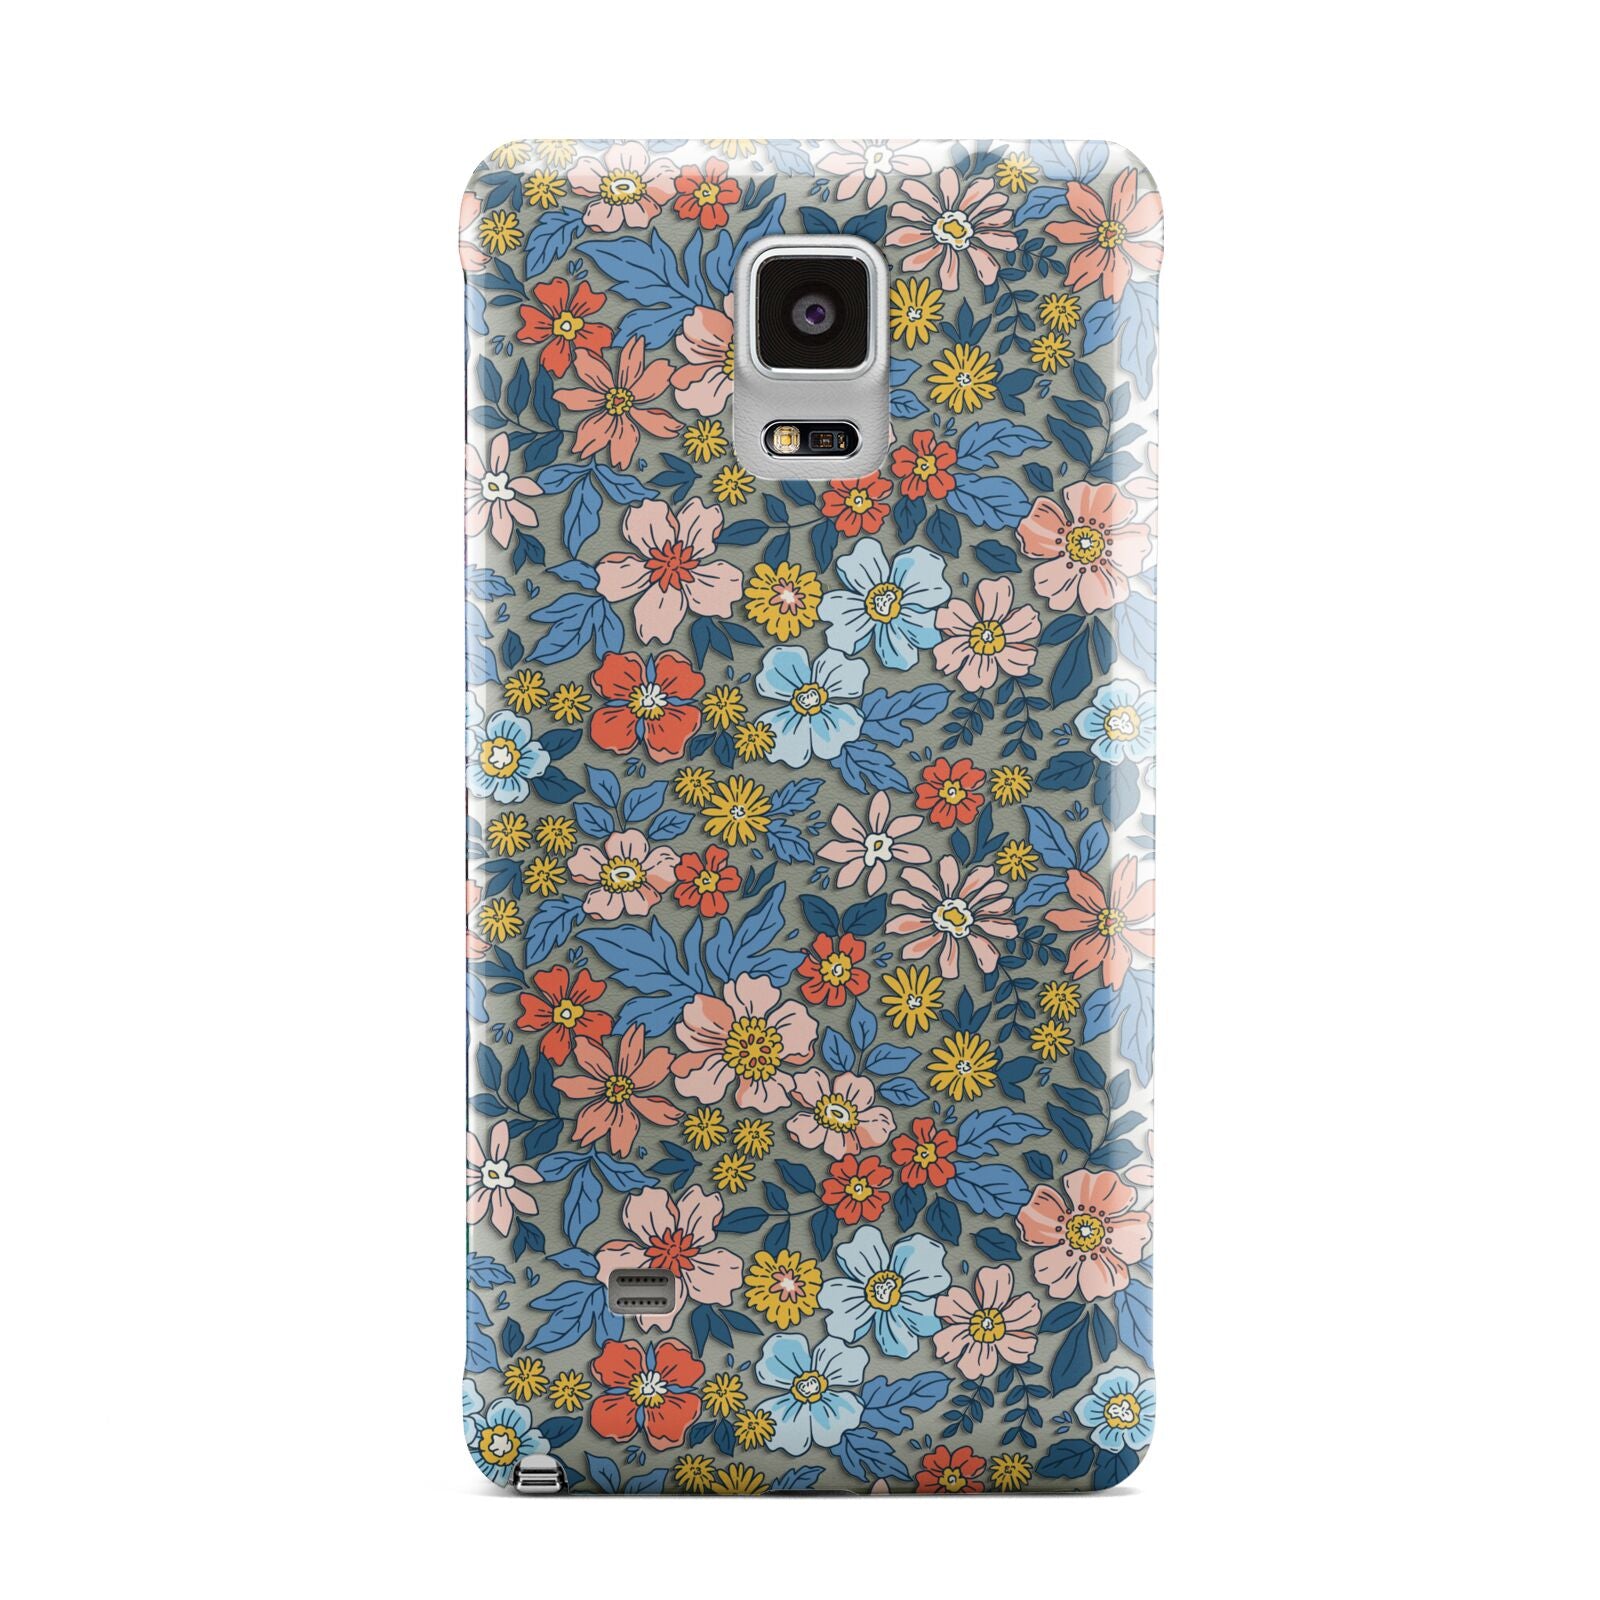 Vintage Flower Samsung Galaxy Note 4 Case